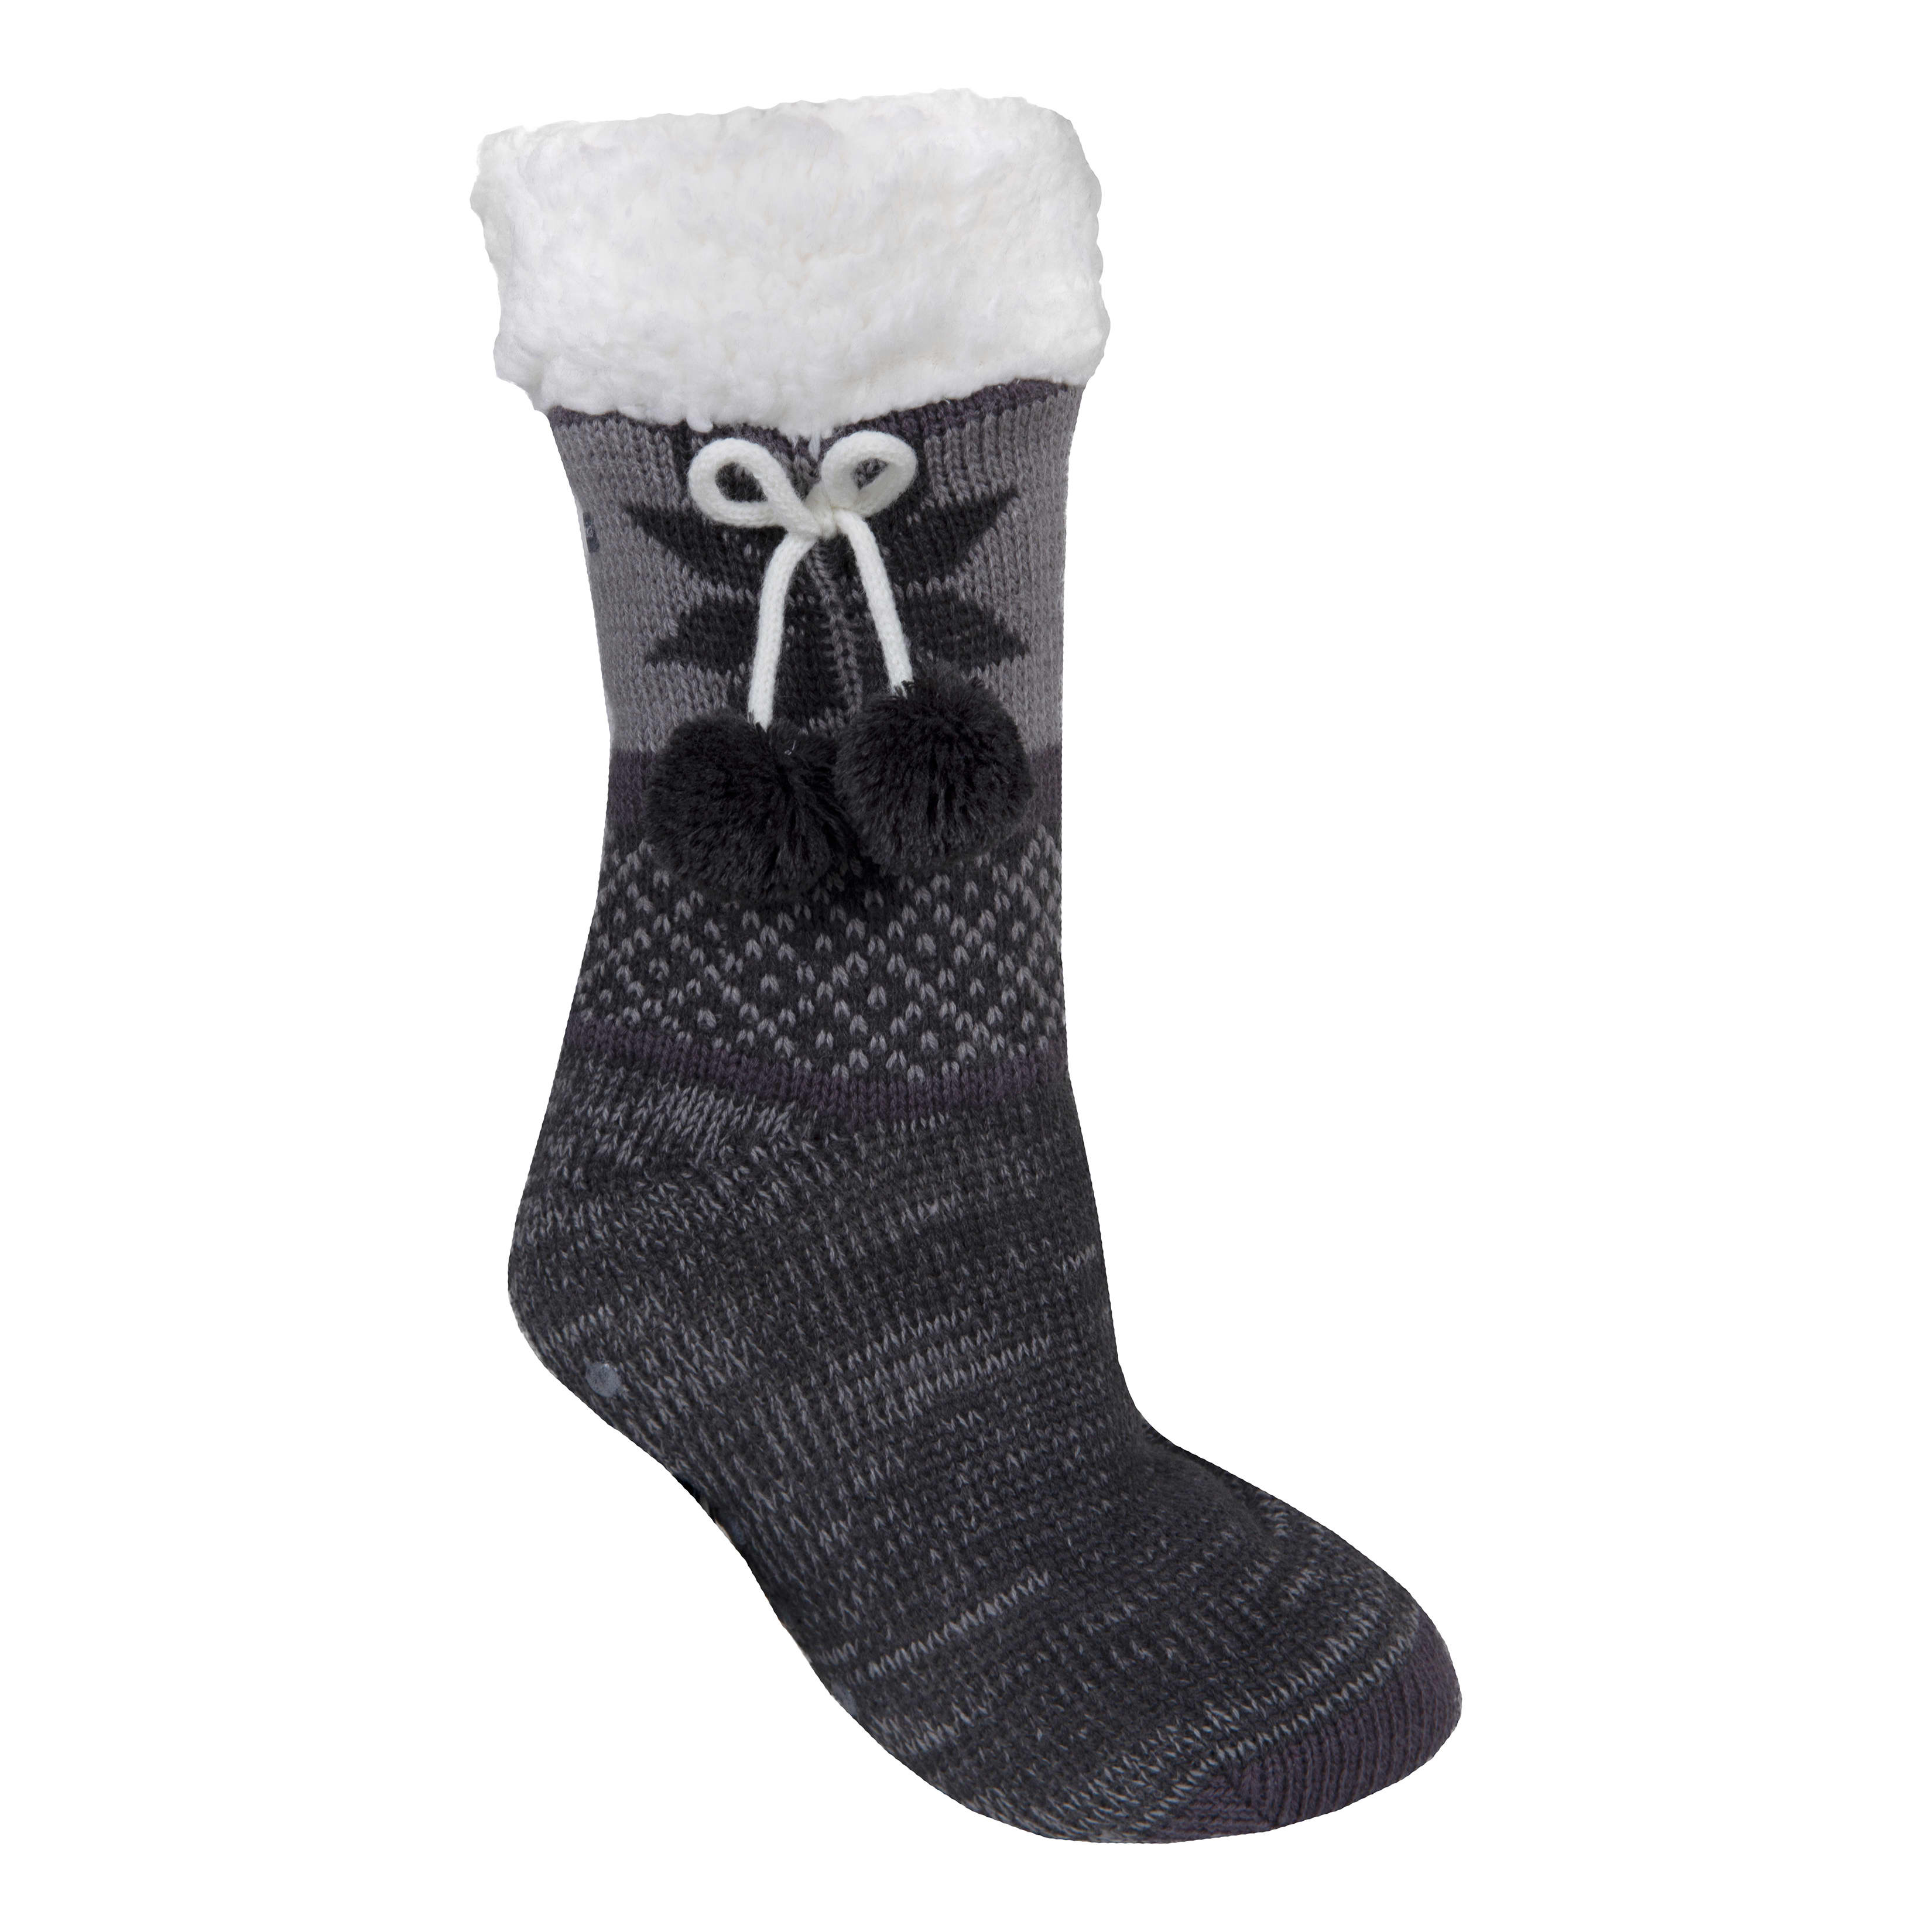 asdas Slipper Socks For Women With Grippers Non Slip,Fuzzy Socks